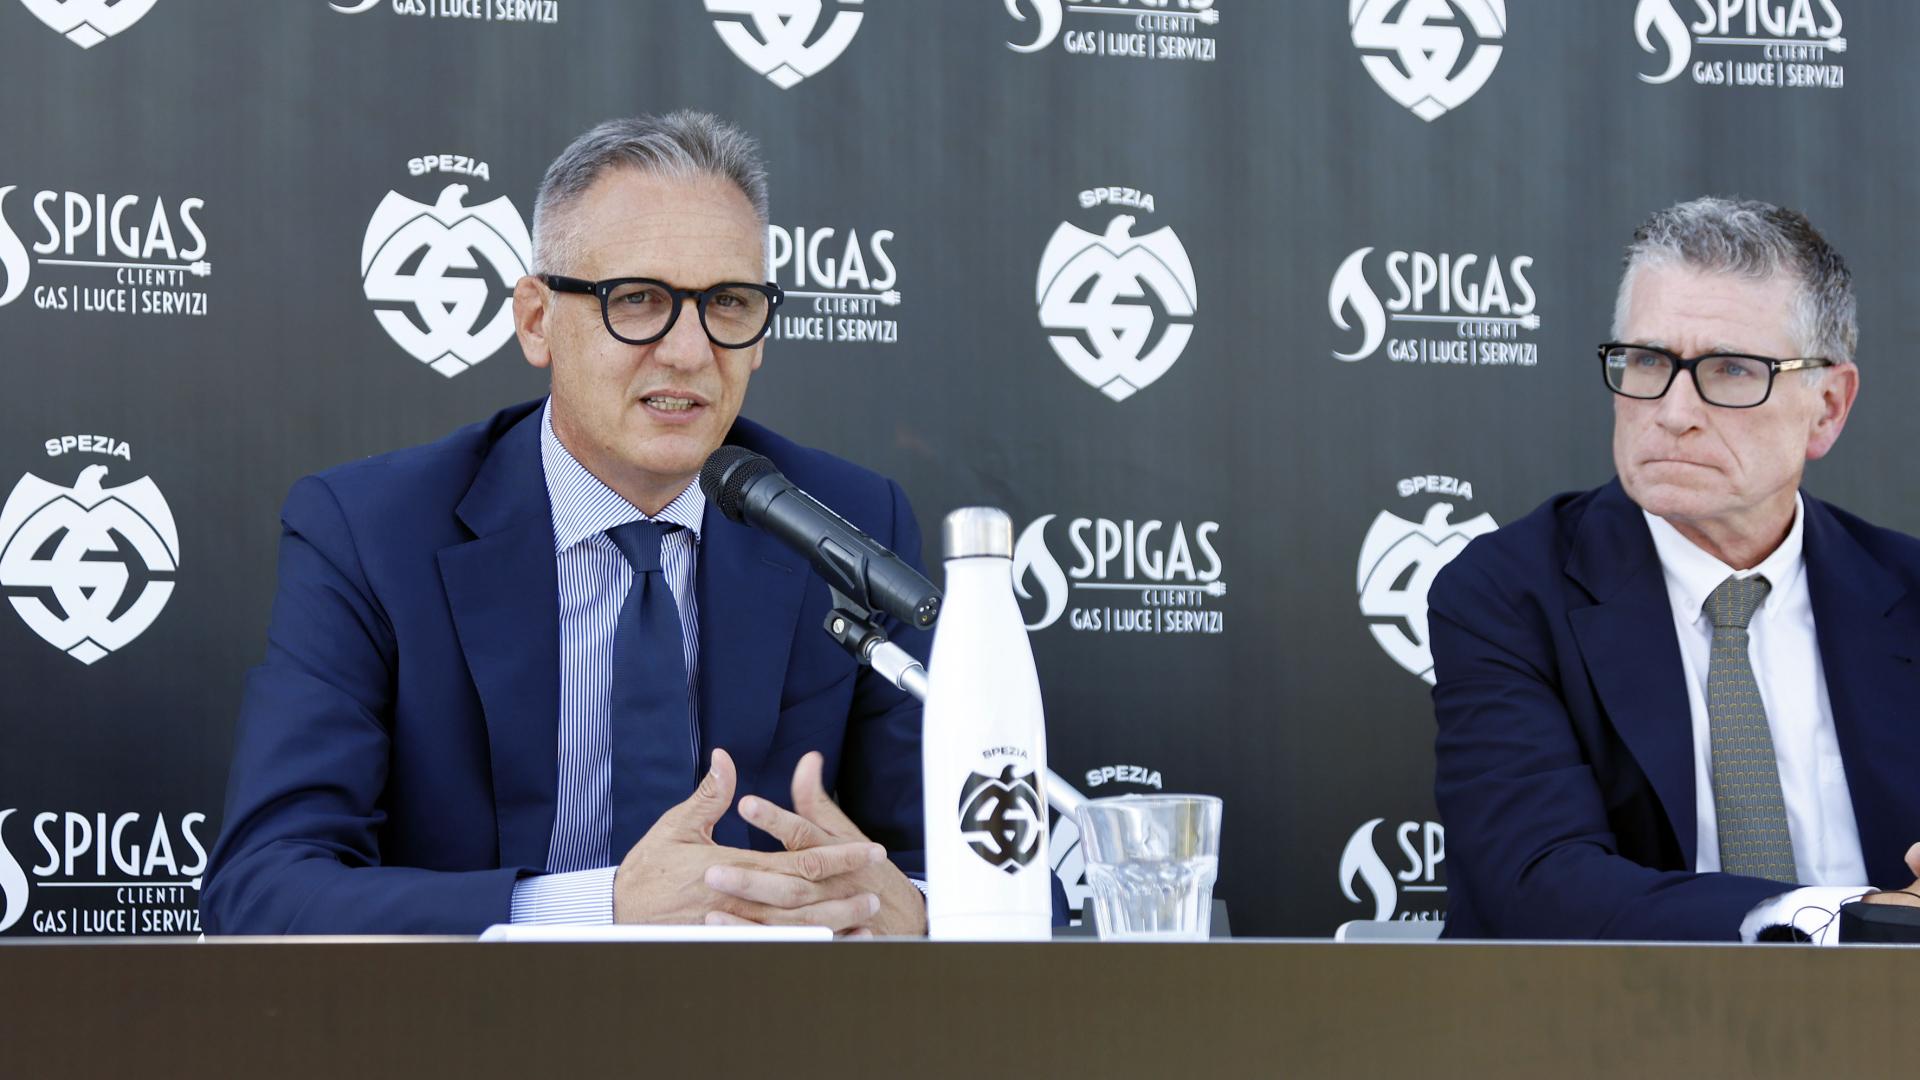 Official presentation of Andrea Gazzoli, new CEO of Spezia Calcio